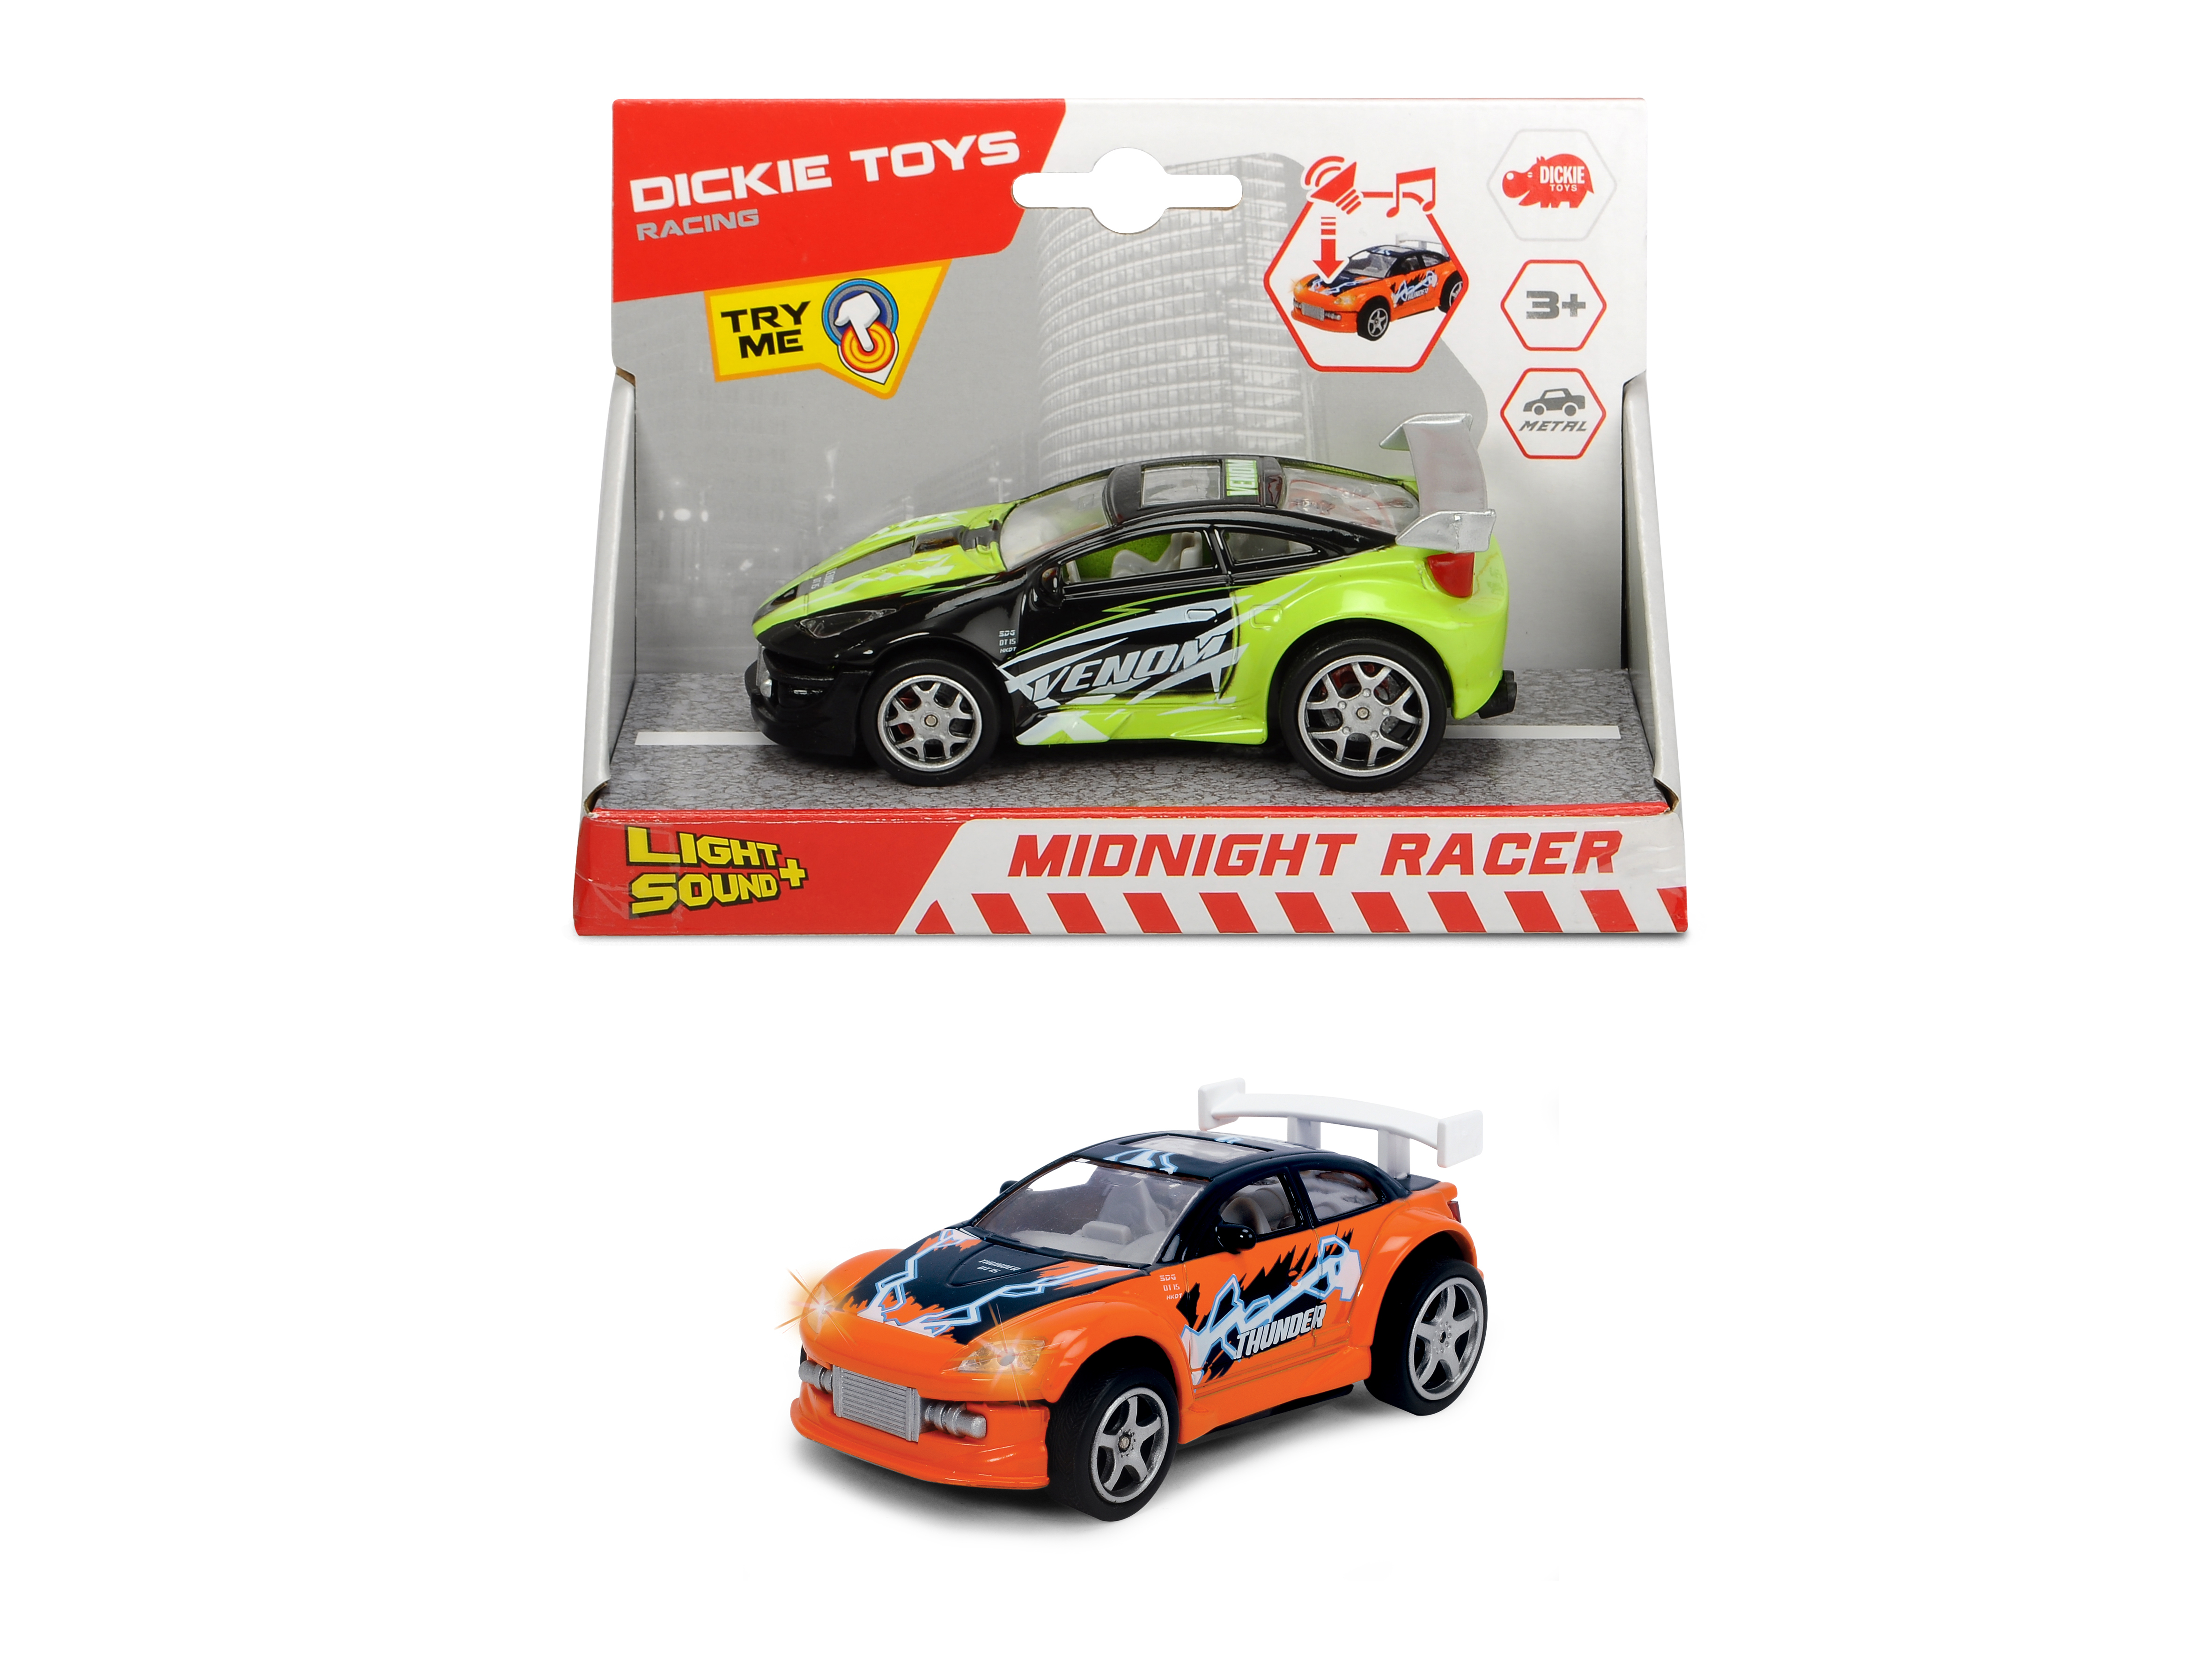 DICKIE-TOYS Midnight Racer, Grün/Schwarz, Spielzeugauto 2-sort. Orange/Blau